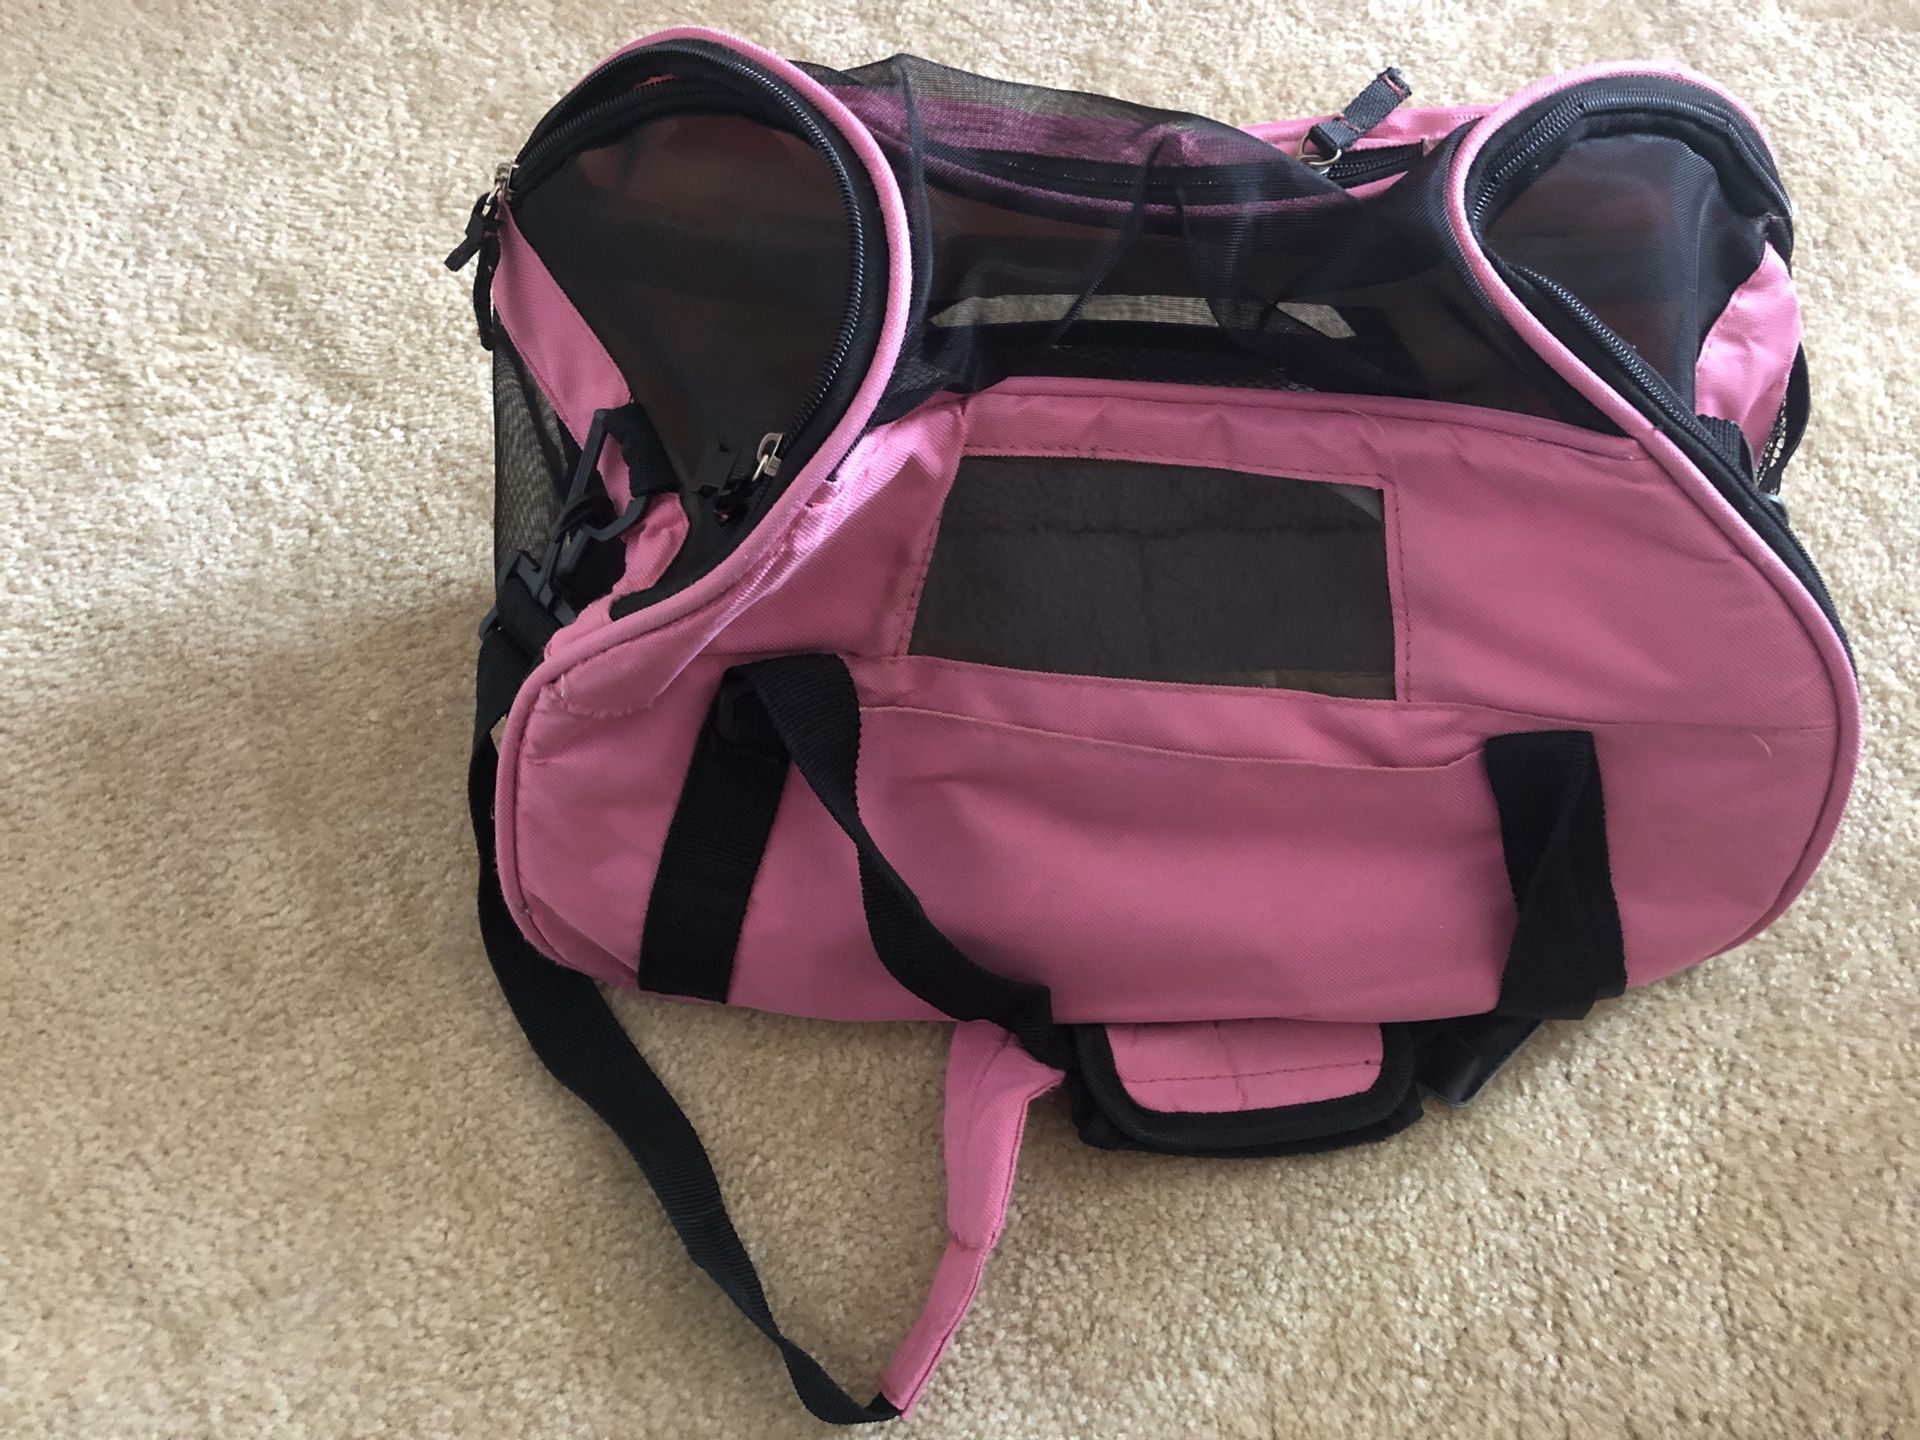 Dog bag/purse